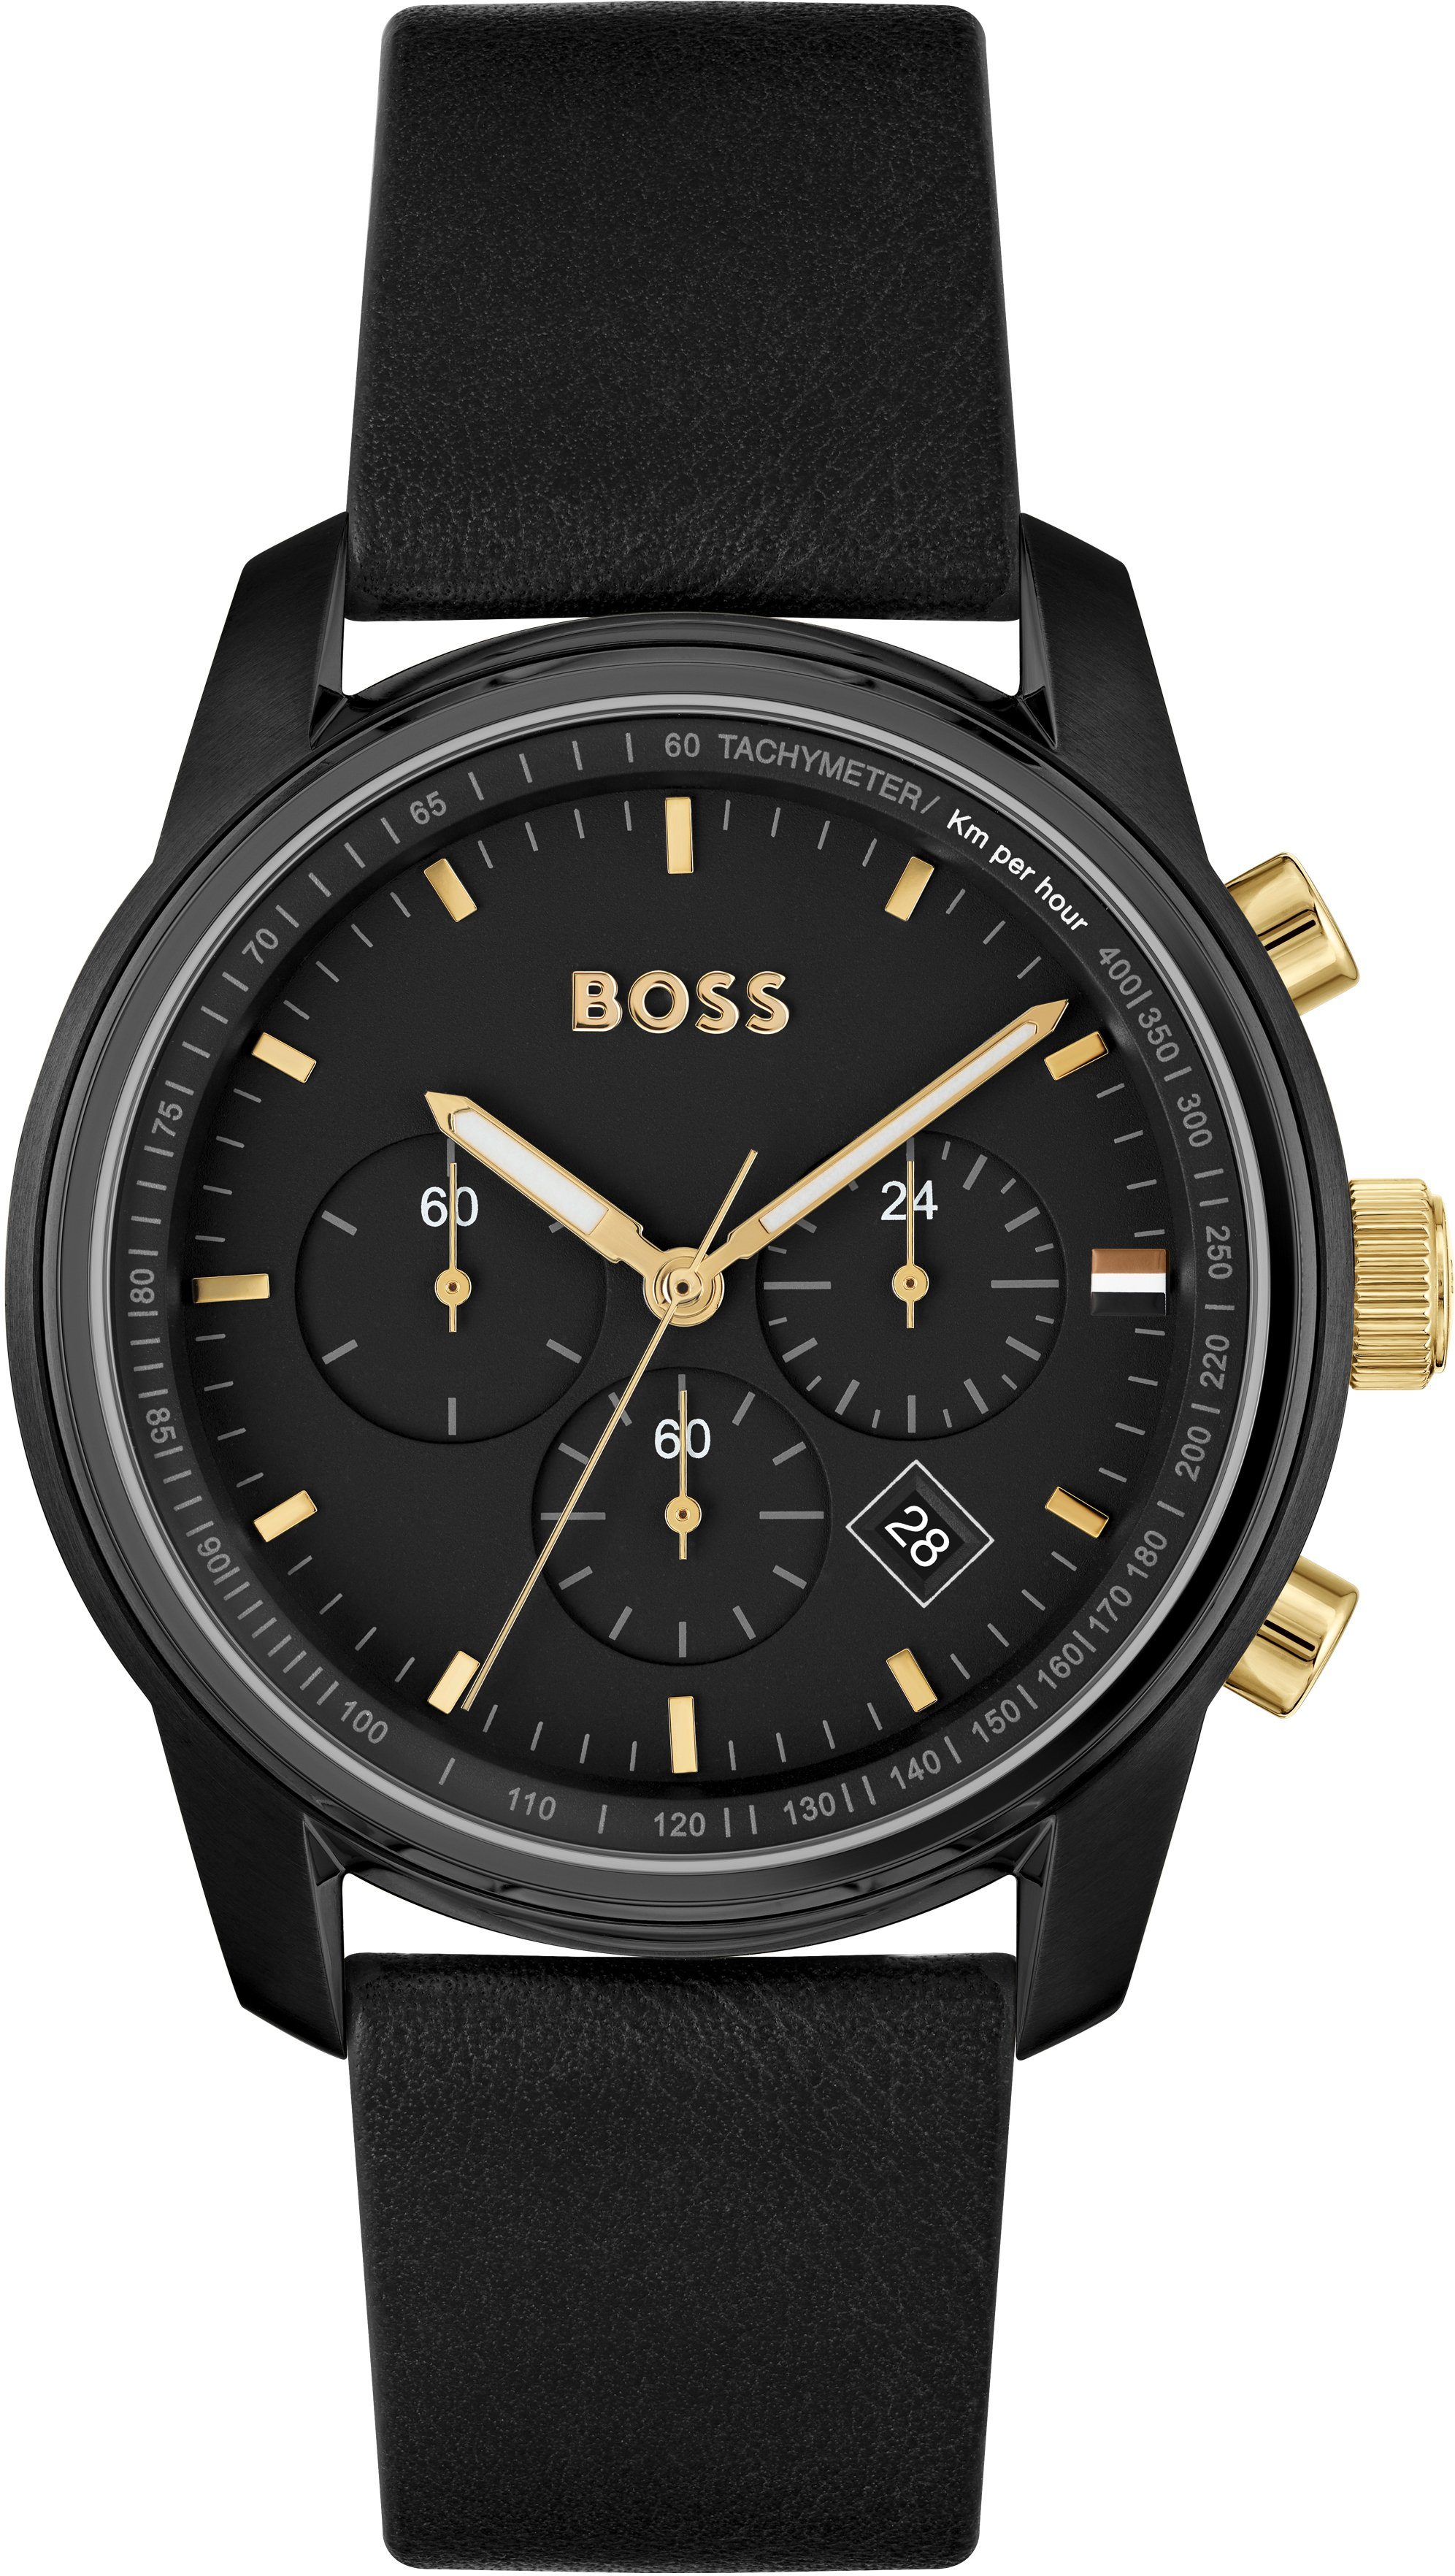 Grüne Hugo Boss Uhren online kaufen | OTTO